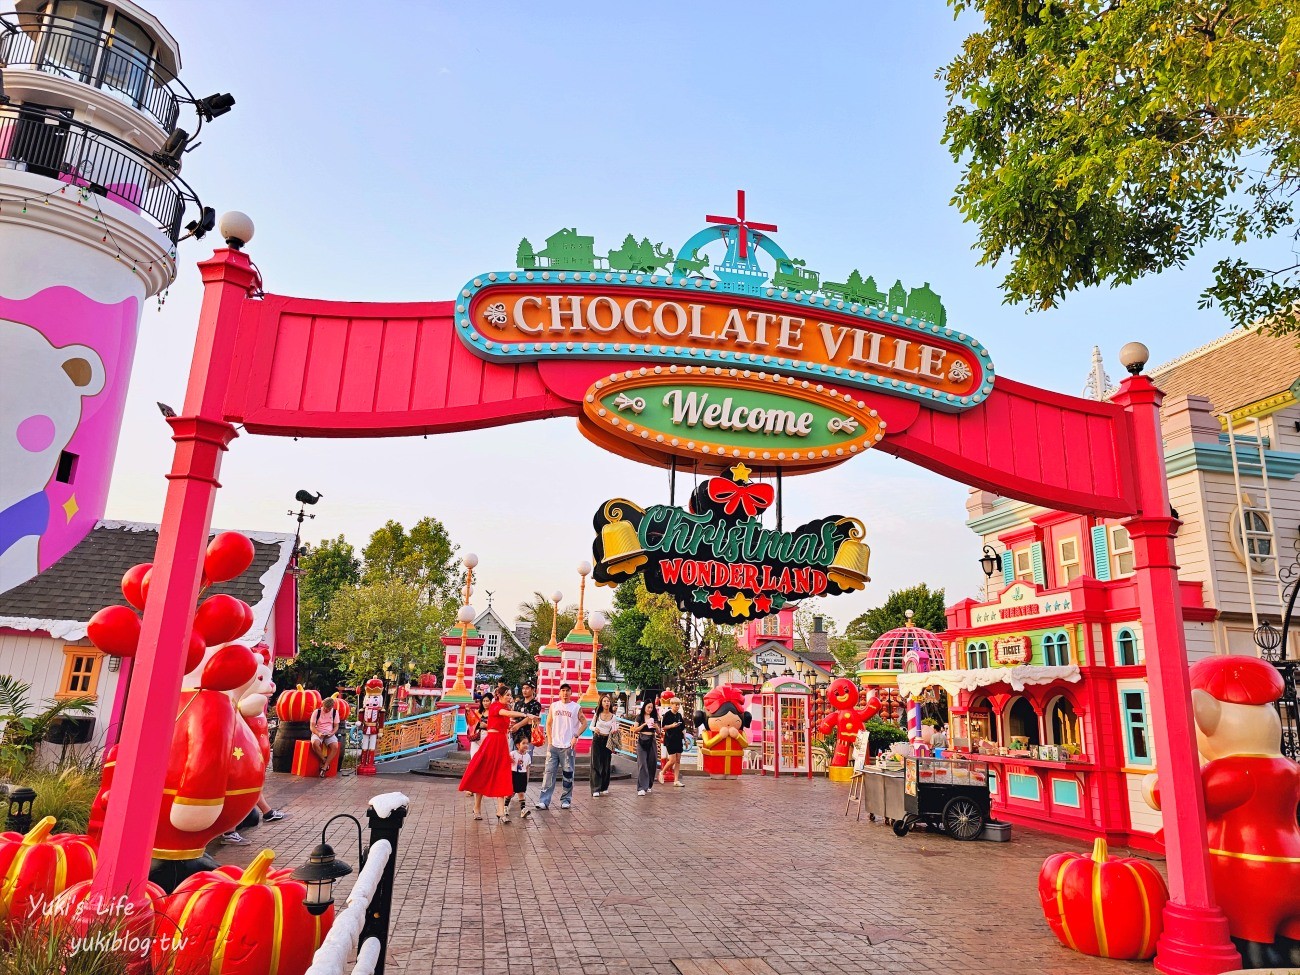 曼谷景點》巧克力村 Chocolate Ville(門票、評價)~浪漫必訪歐洲小鎮約會景點 - yukiblog.tw